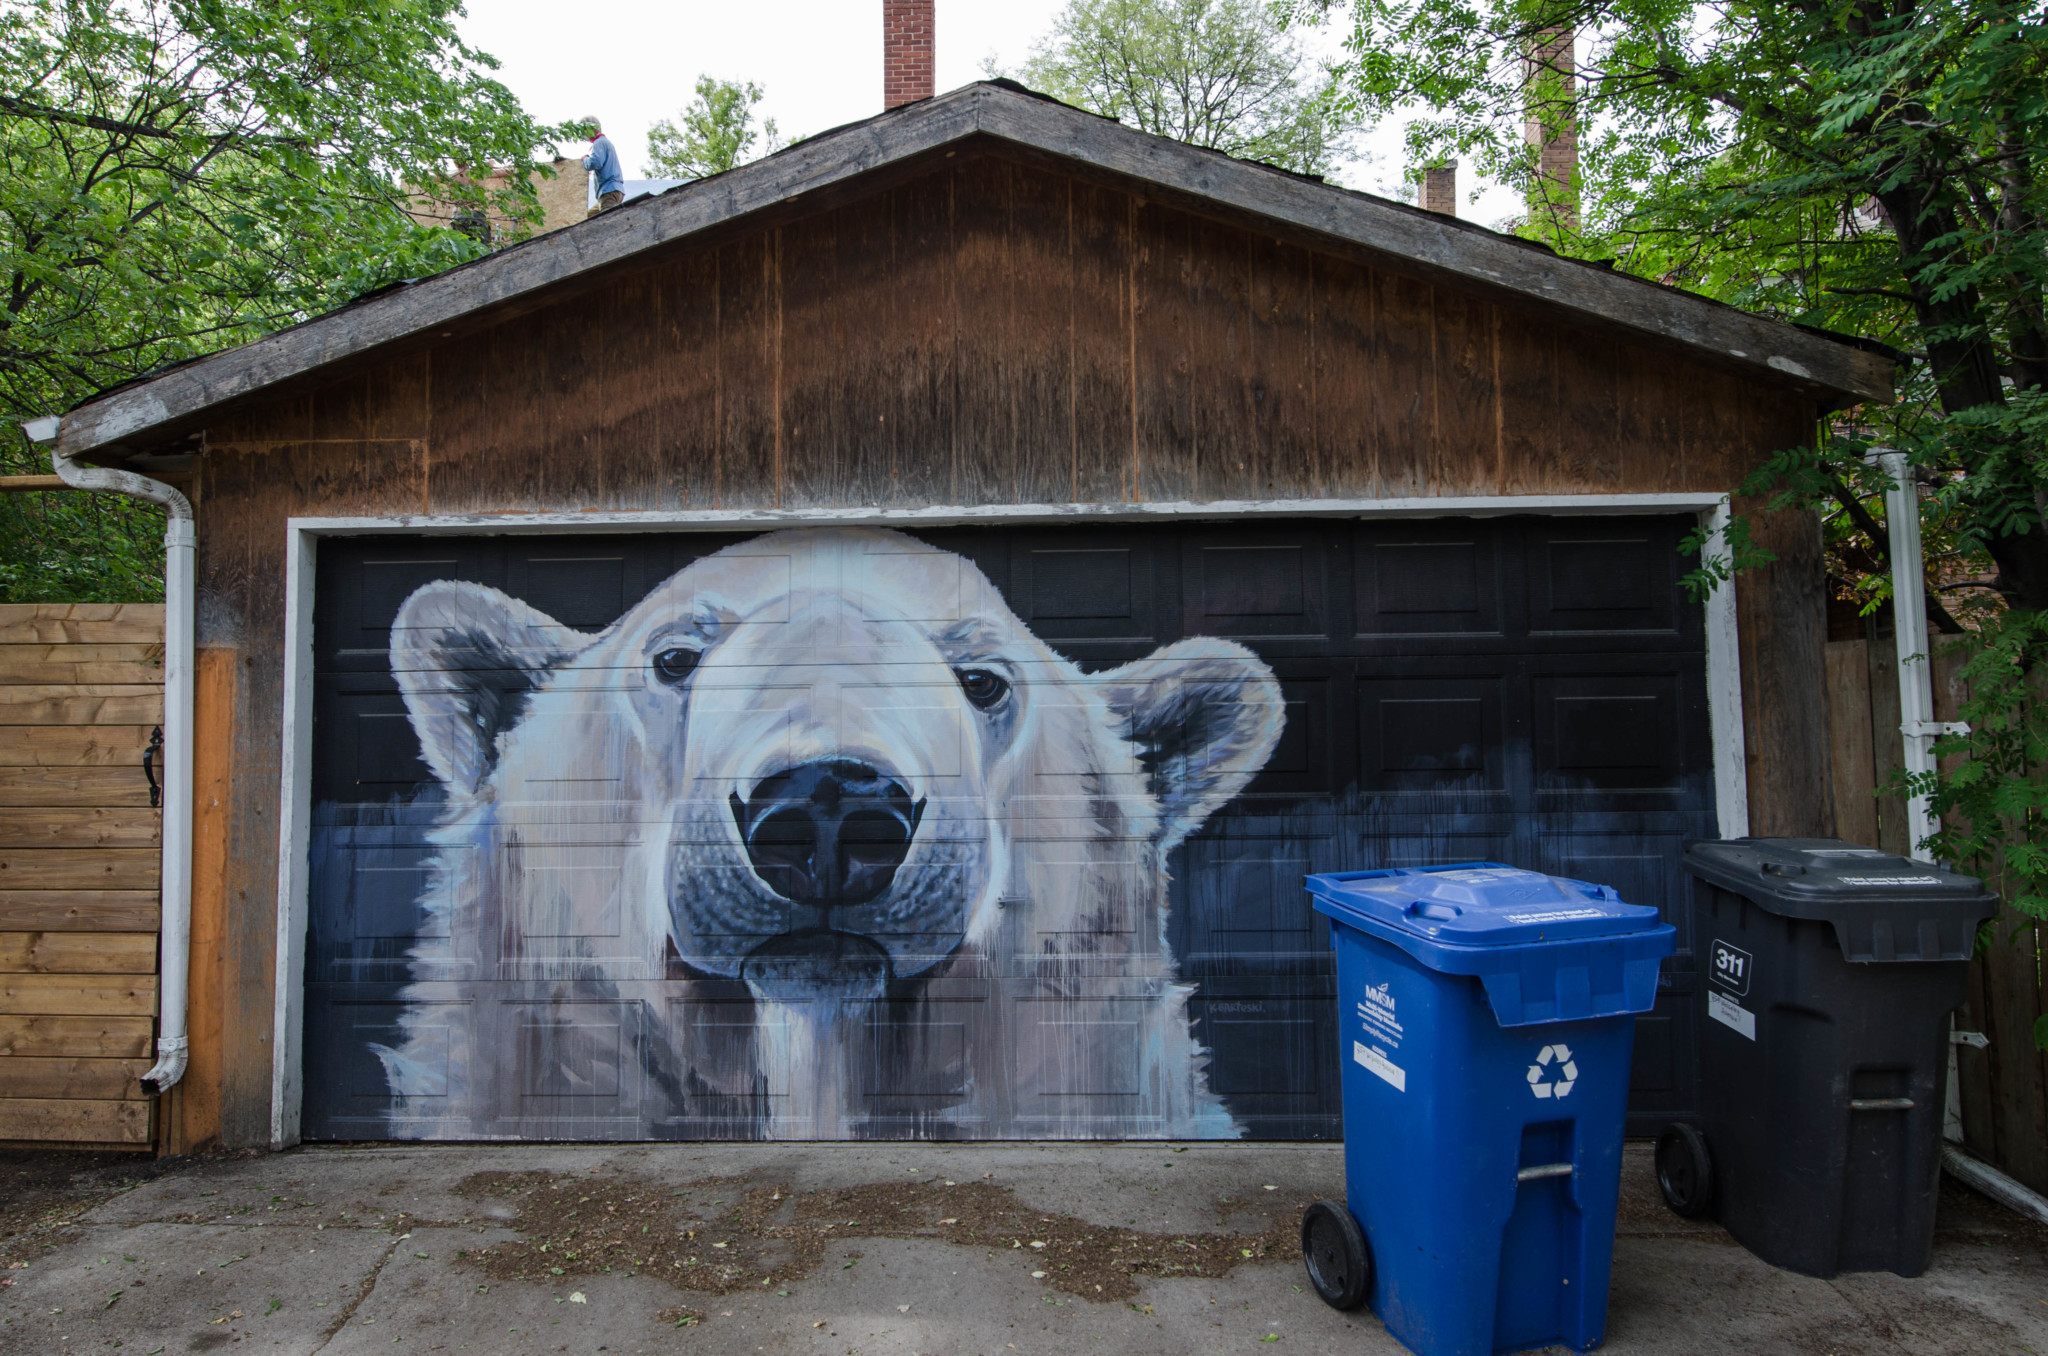 Typisches Mural in Winnipeg in Kanada